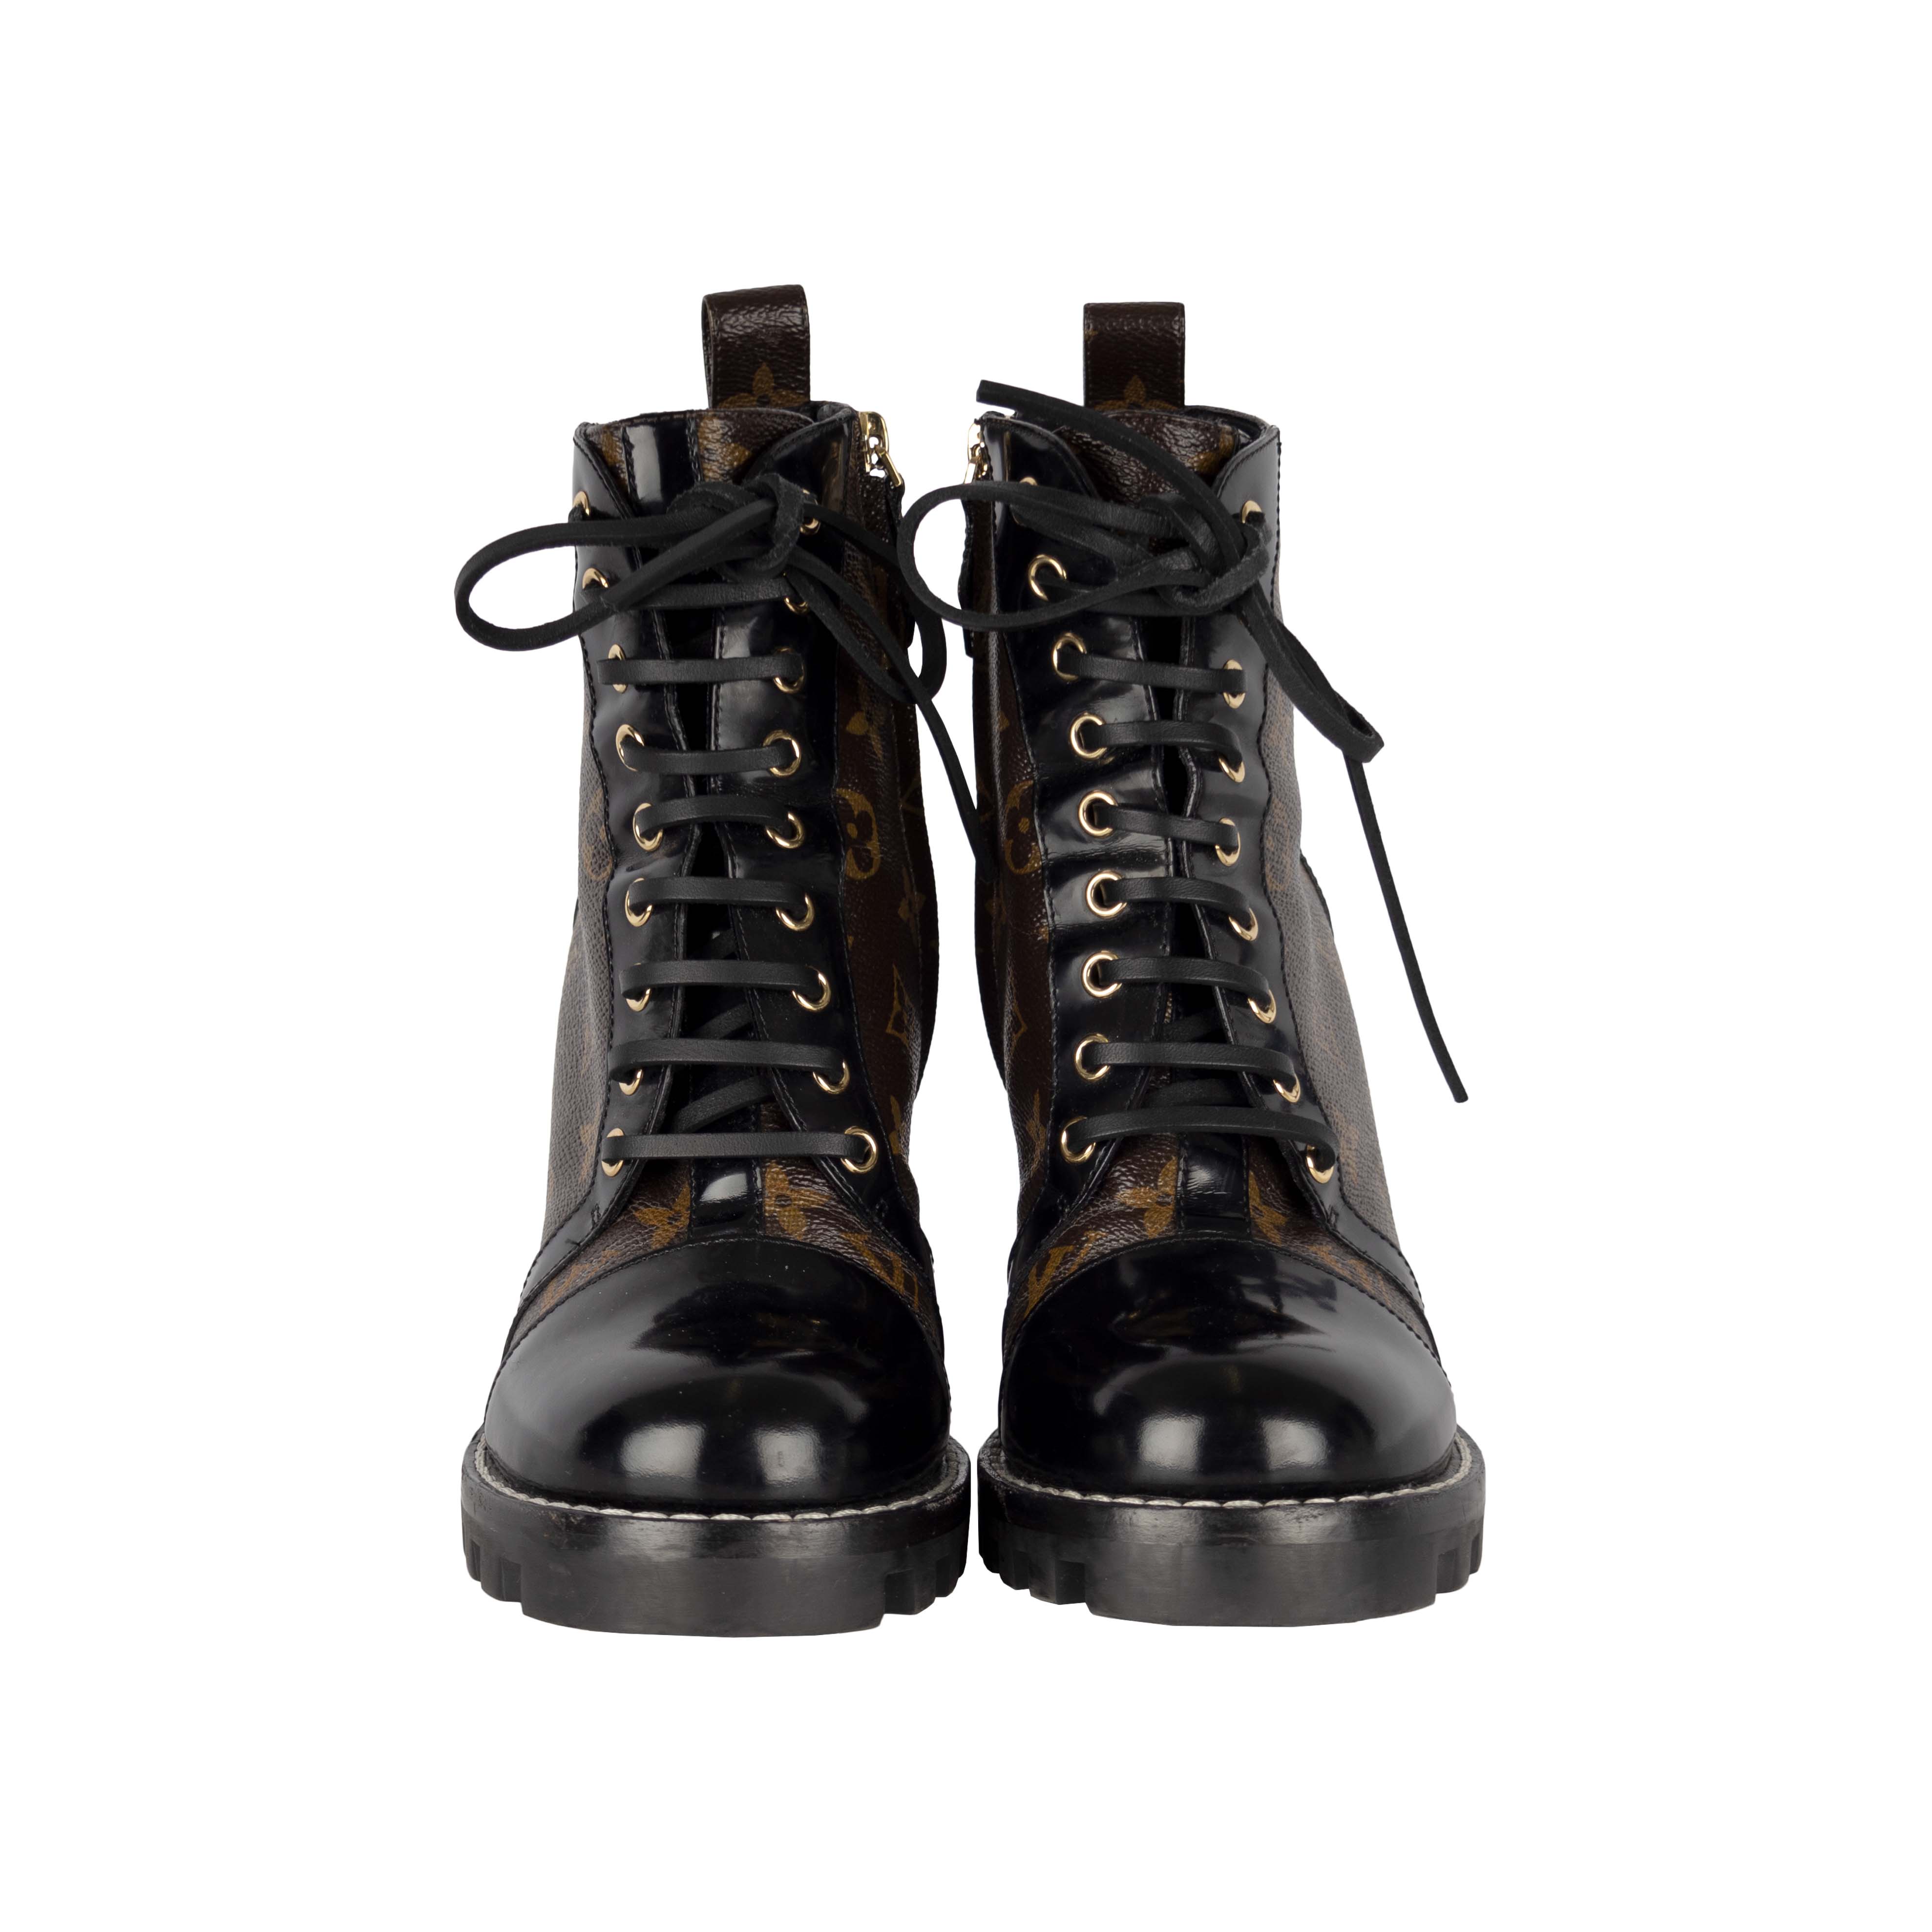 Louis Vuitton Star Trail Comparison REVIEW Ankle Boot Vs. 8CM +